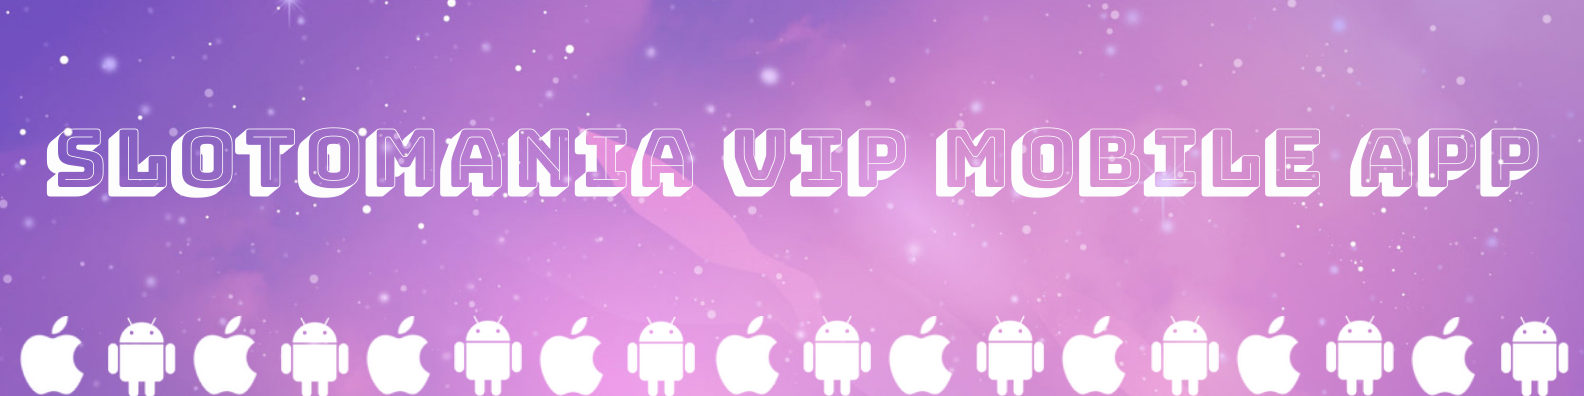 Slotomania VIP Mobile App